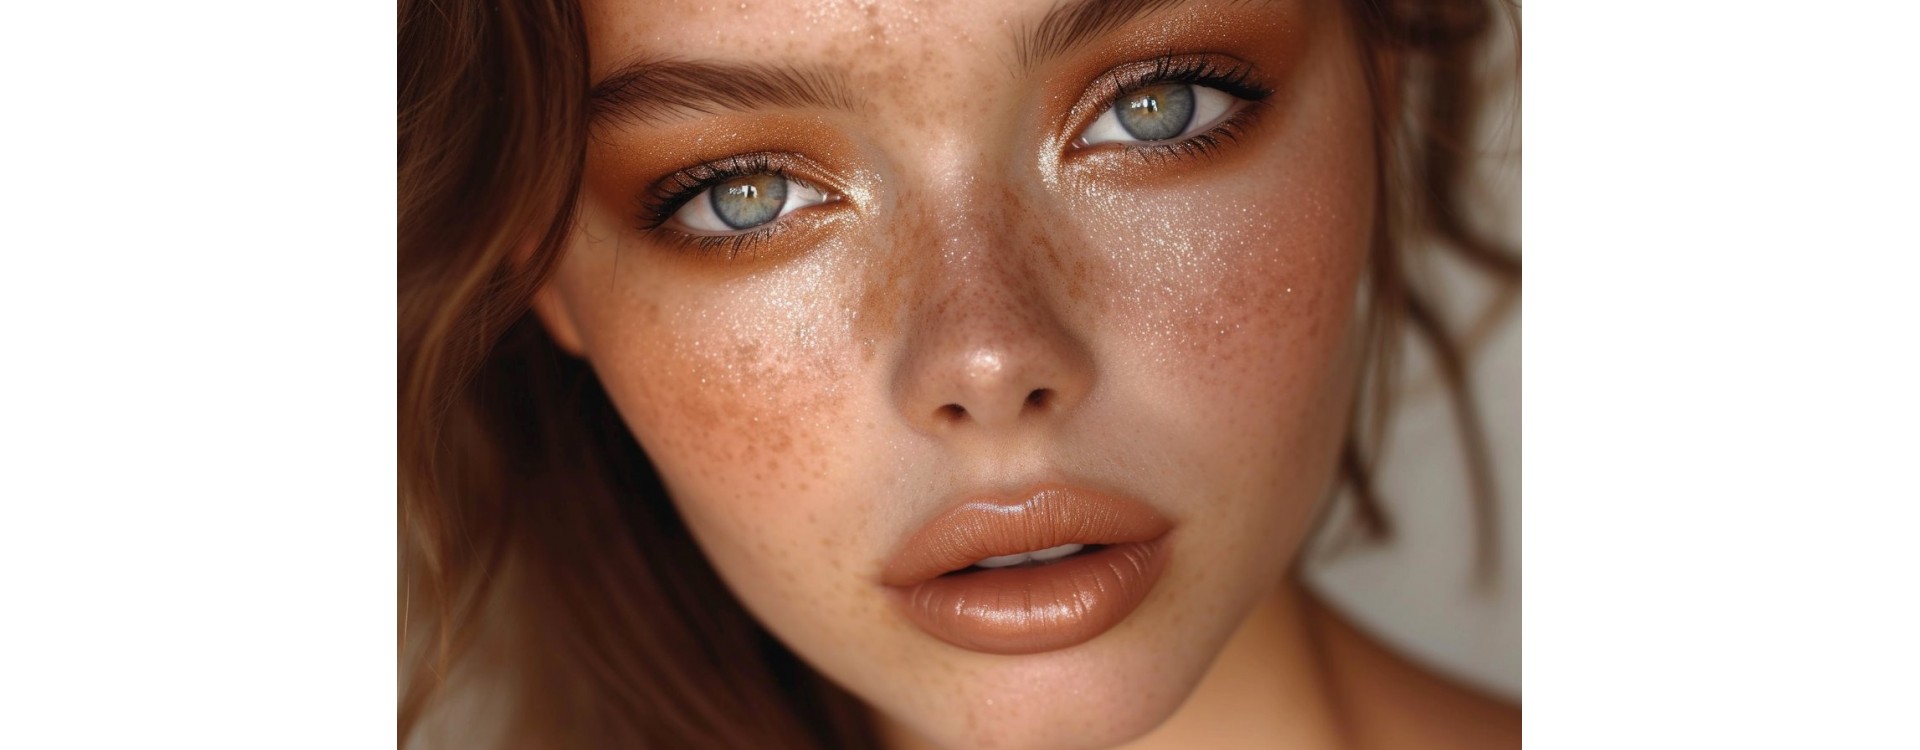 Tendance beauté Latte Makeup : une révolution dans le monde du maquillage